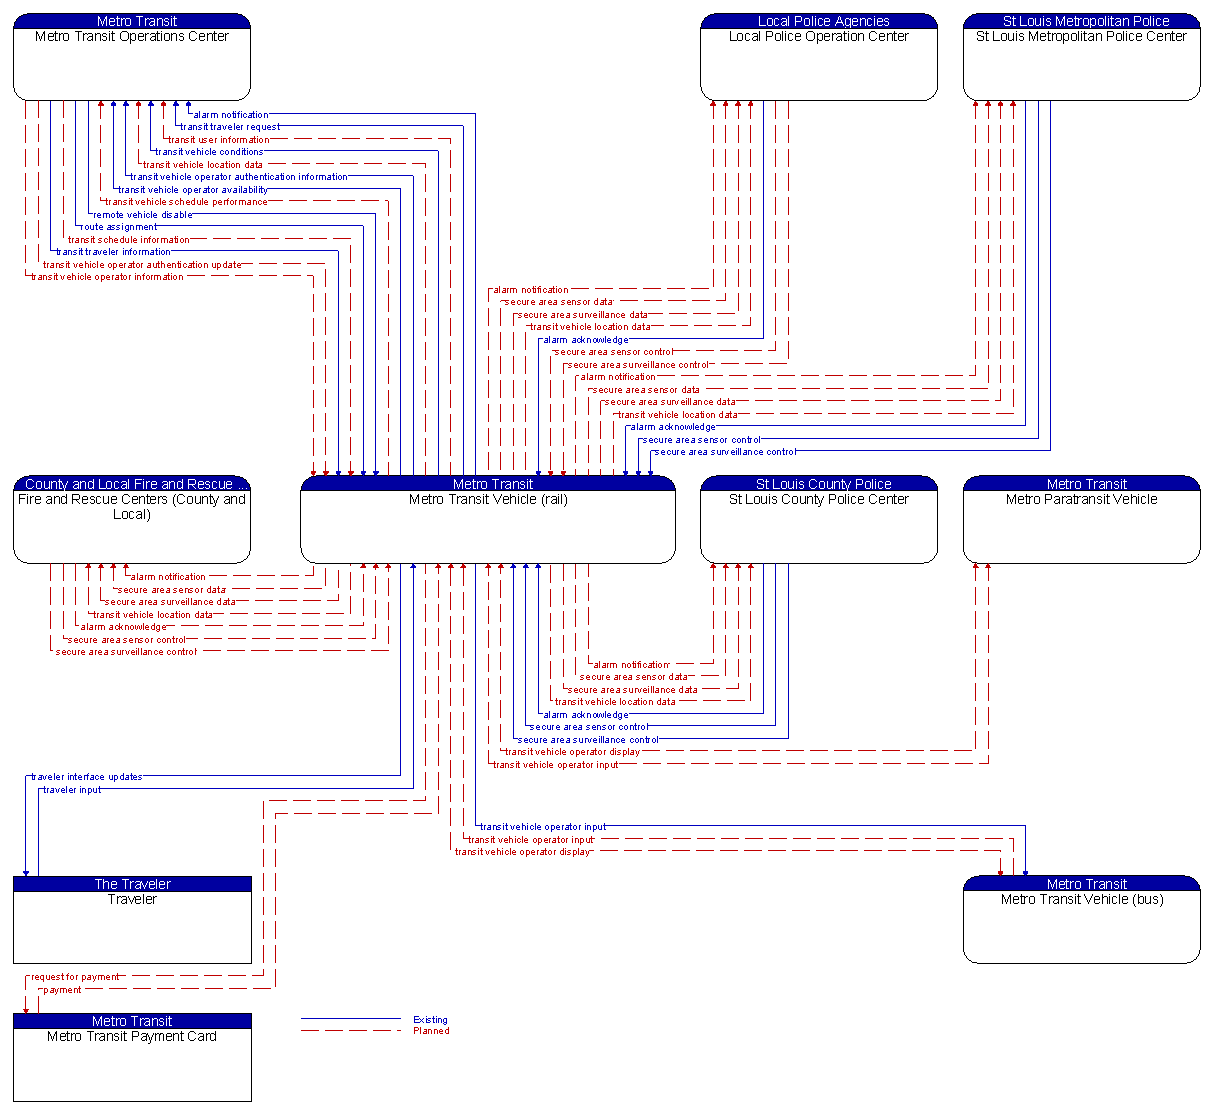 Context Diagram - Metro Transit Vehicle (rail)